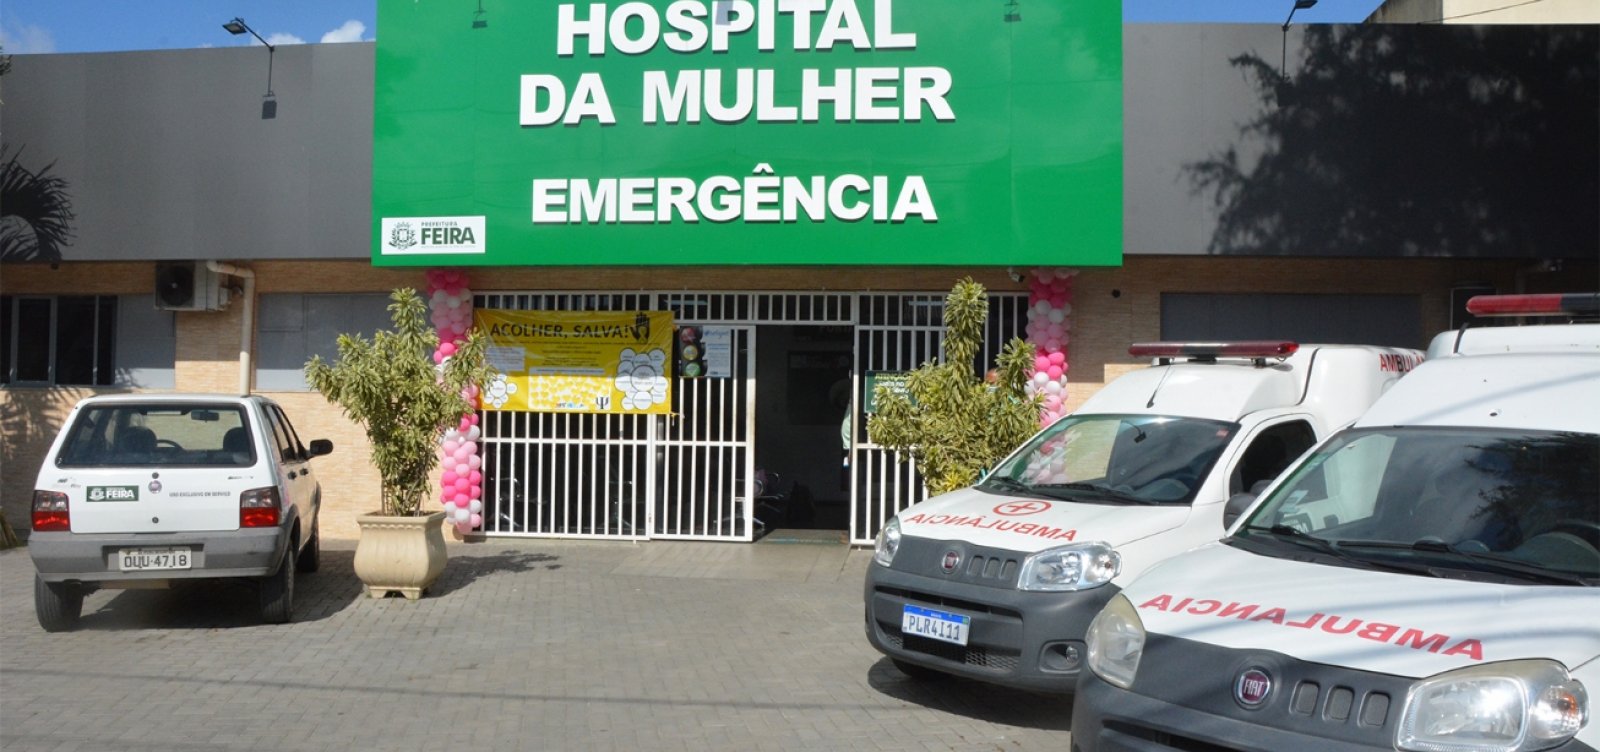 Prefeitura de Feira exige comprovante de vacinação para acesso ao Hospital da Mulher